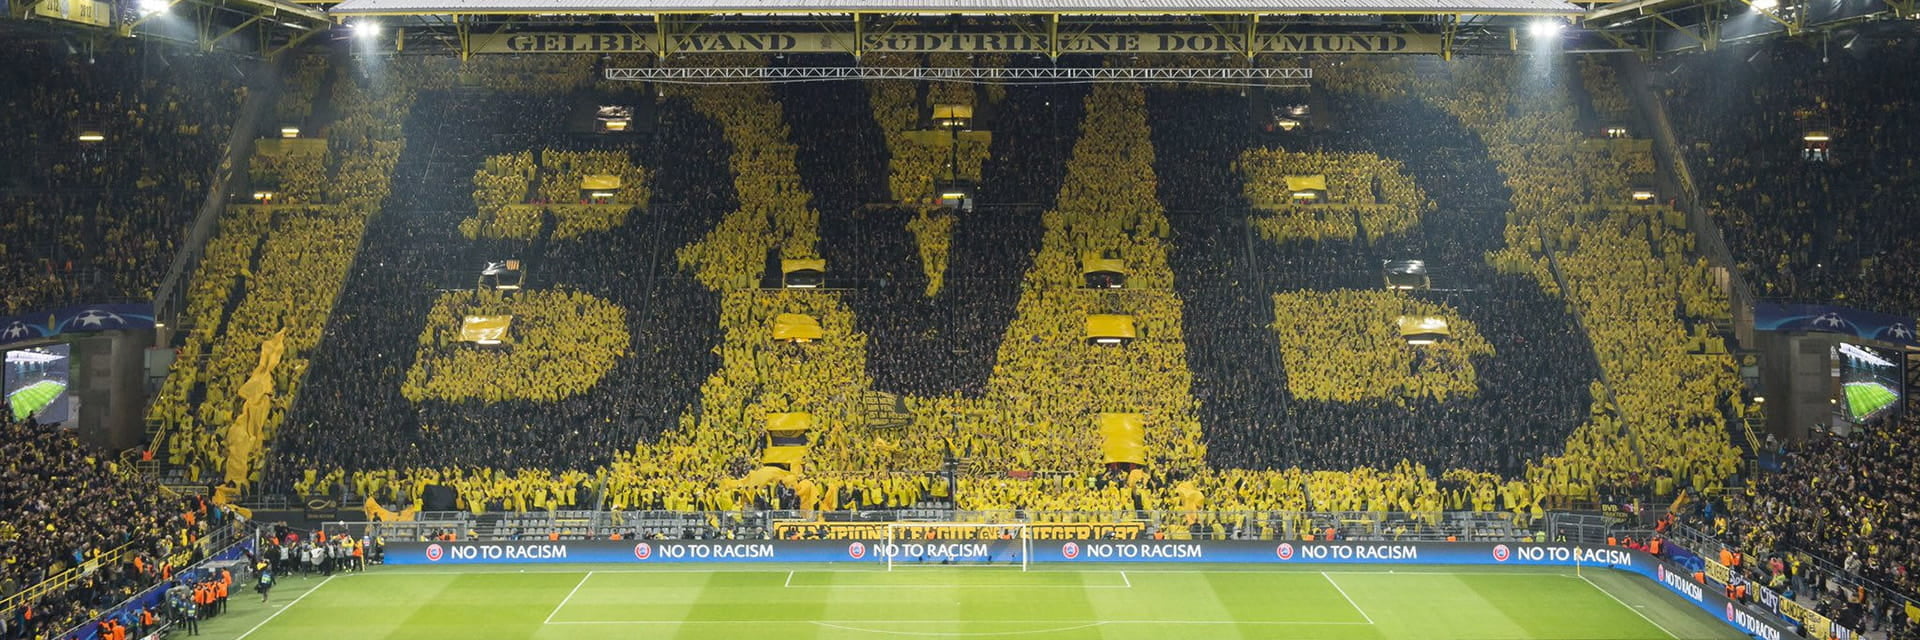 Borussia Dortmund - VfB Stuttgart, 6 octobreà 15:30